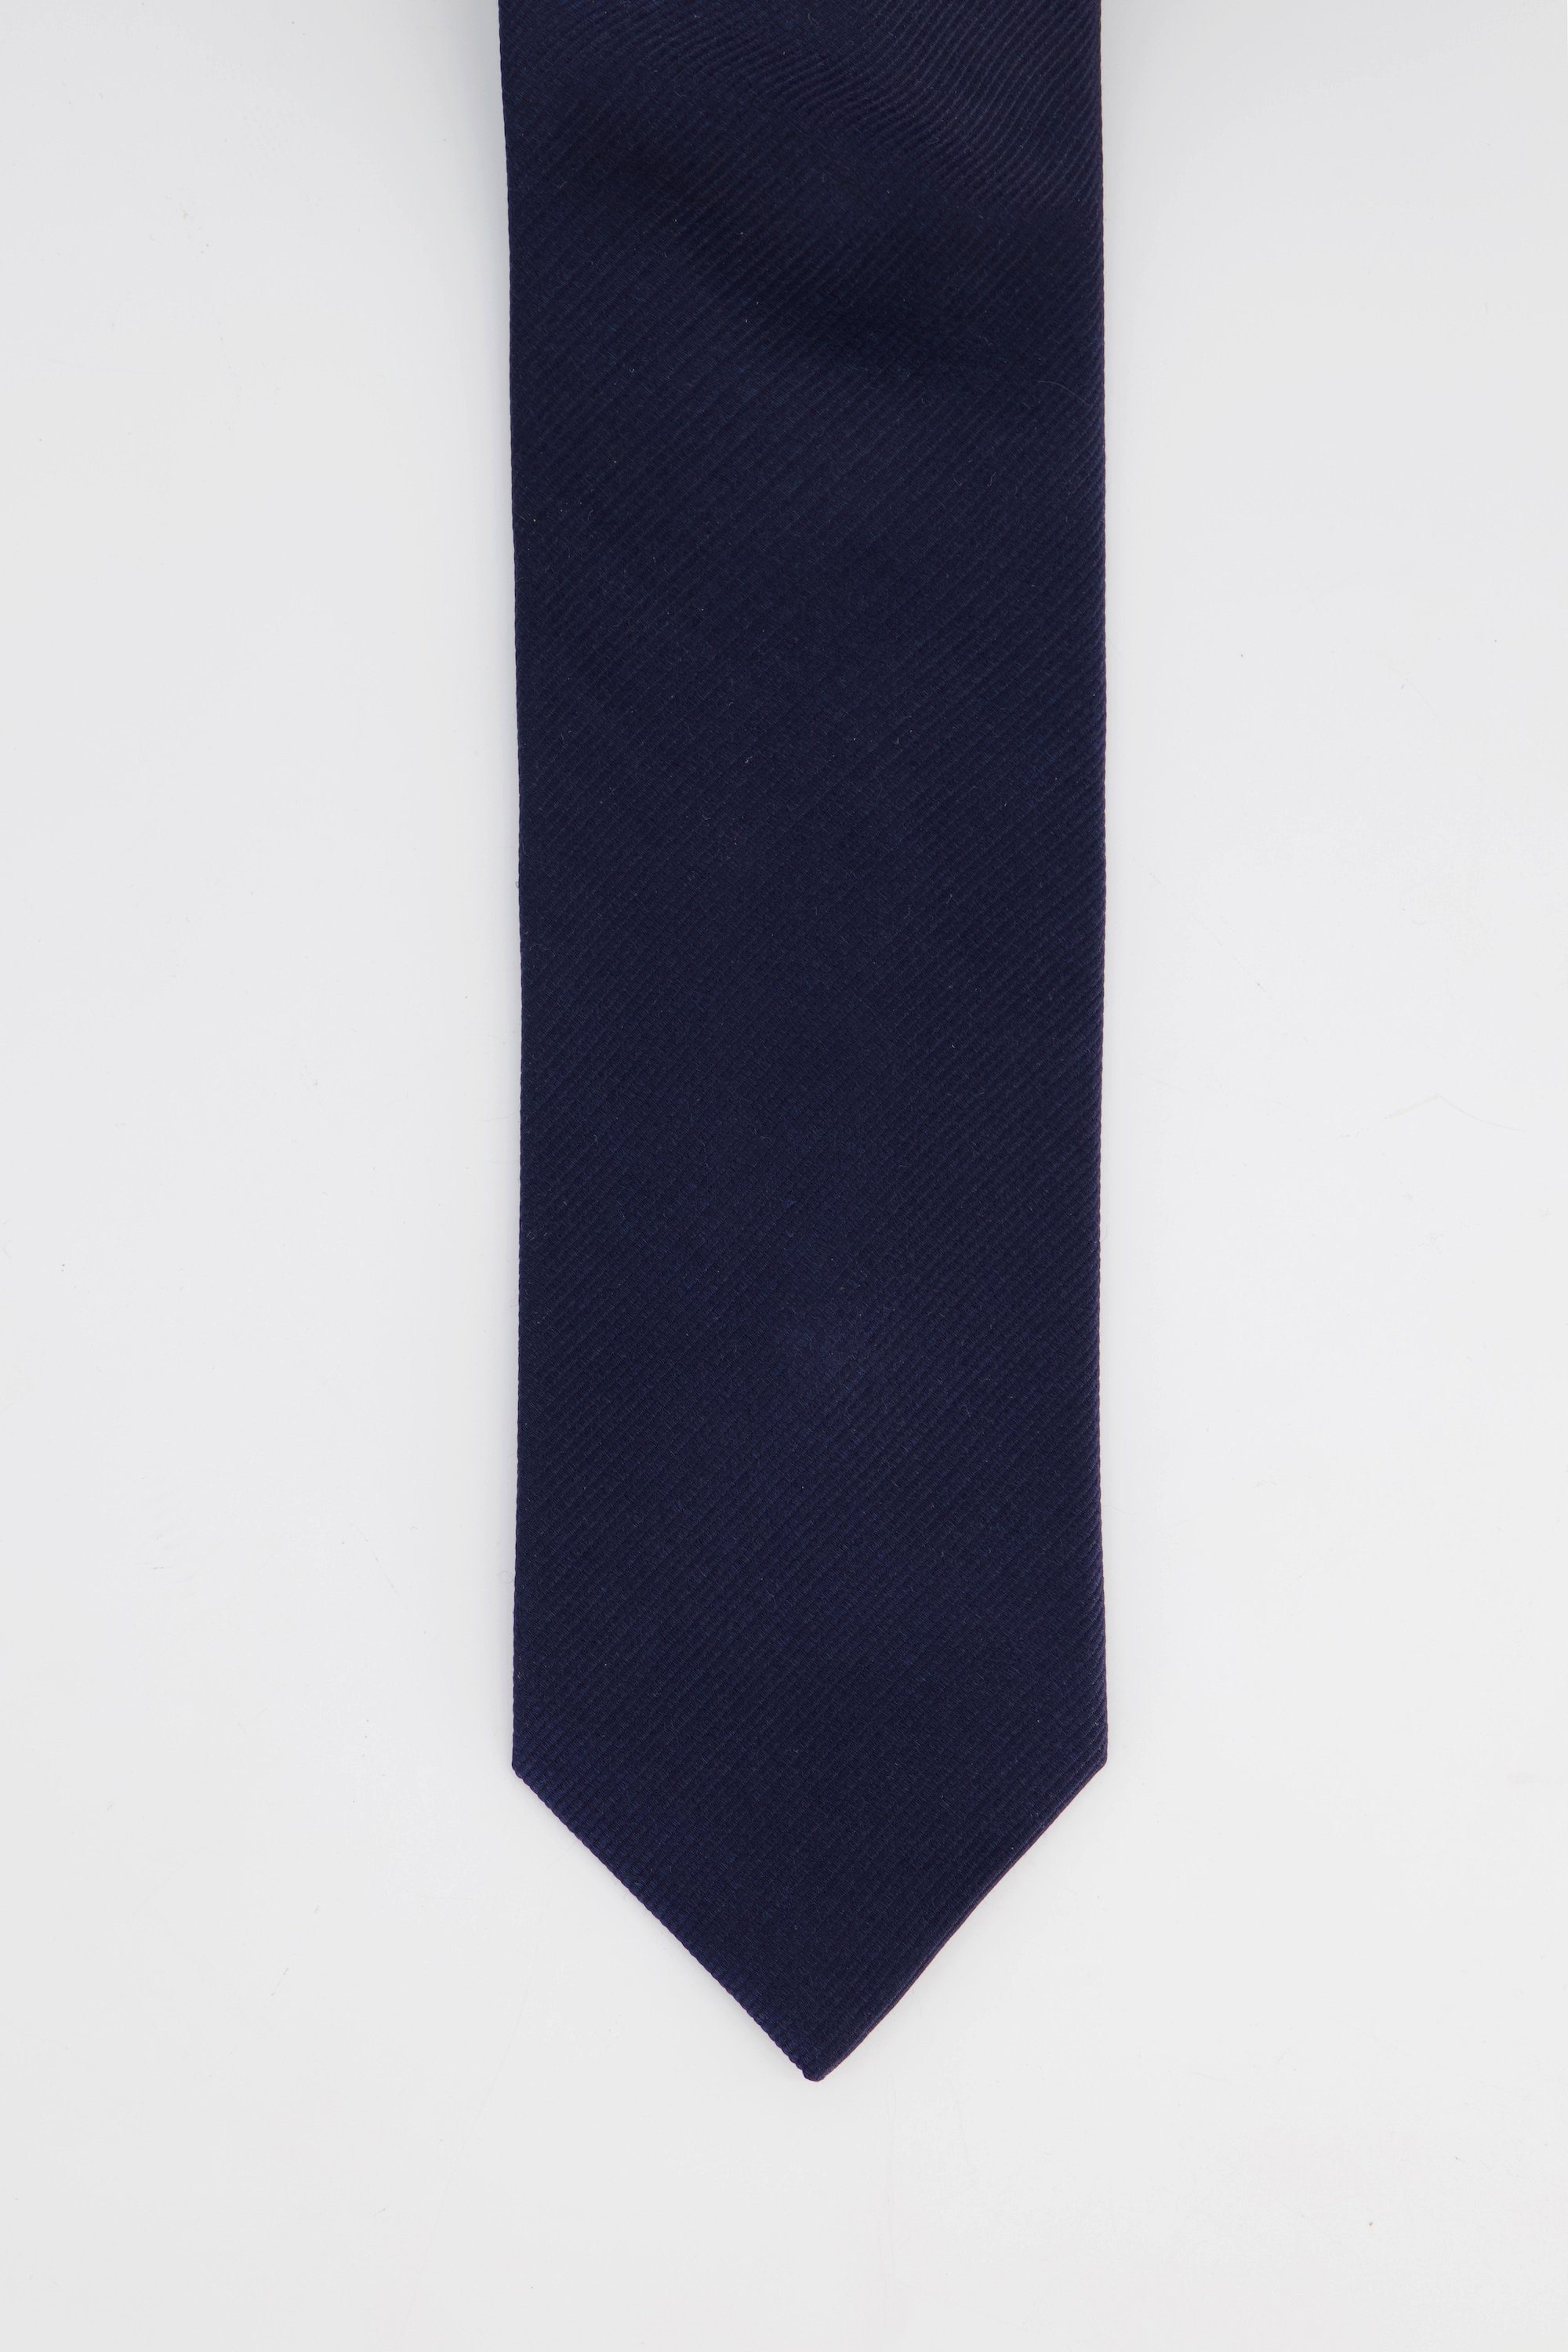 cm Extralänge Krawatte Seiden-Krawatte JP1880 75 dunkel marine Streifen breit